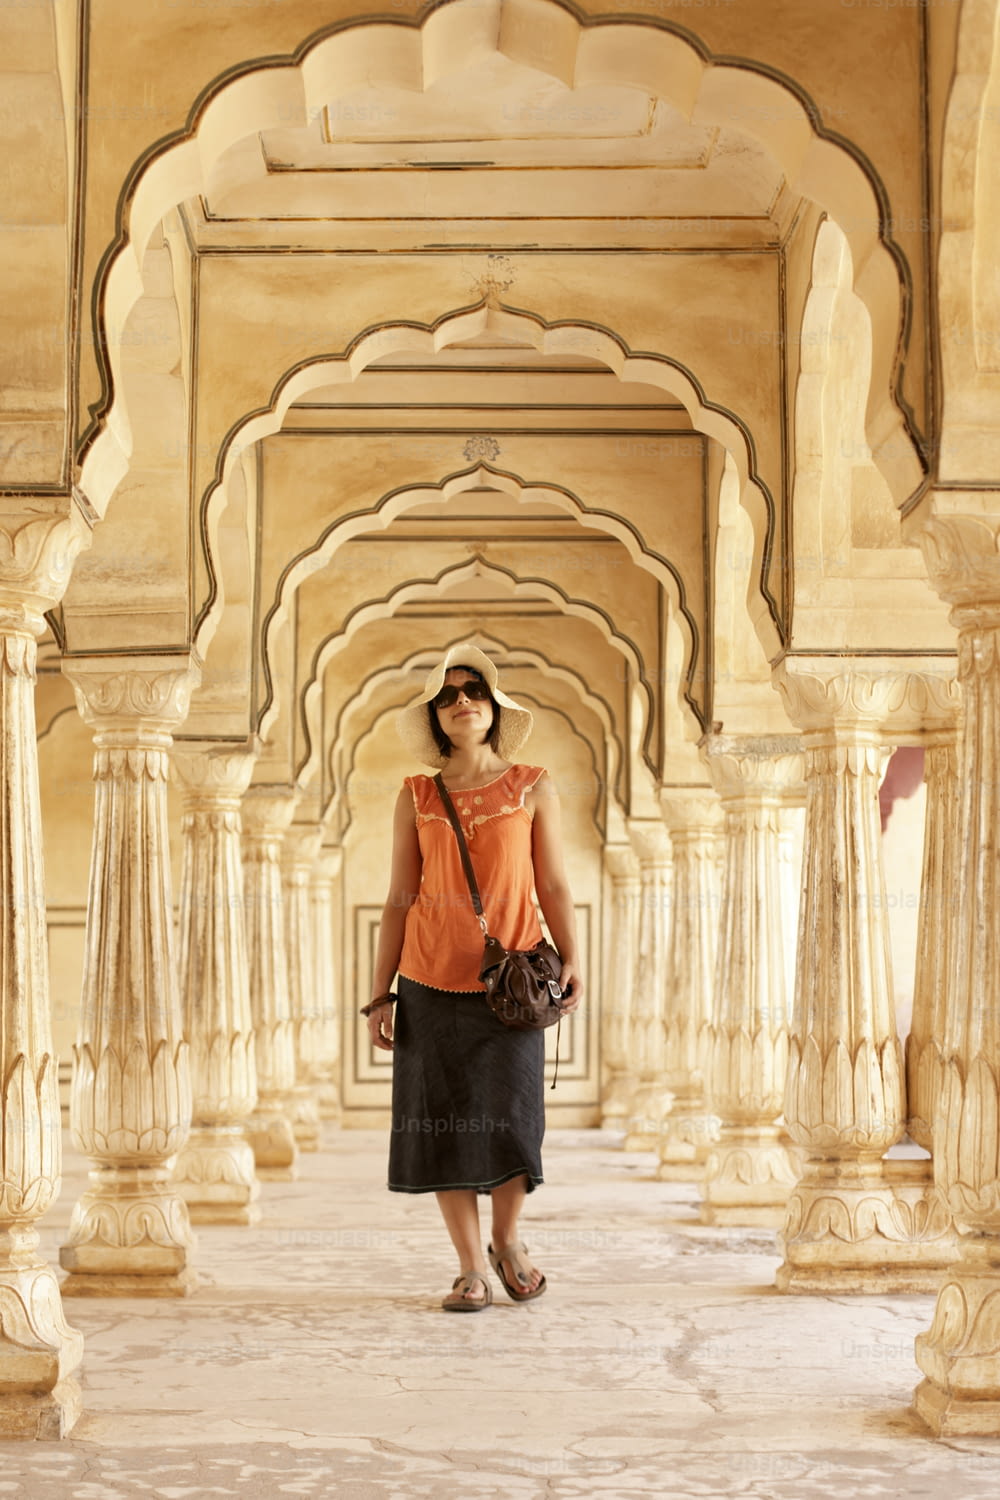 Une femme en chemise orange et jupe noire debout dans un immeuble